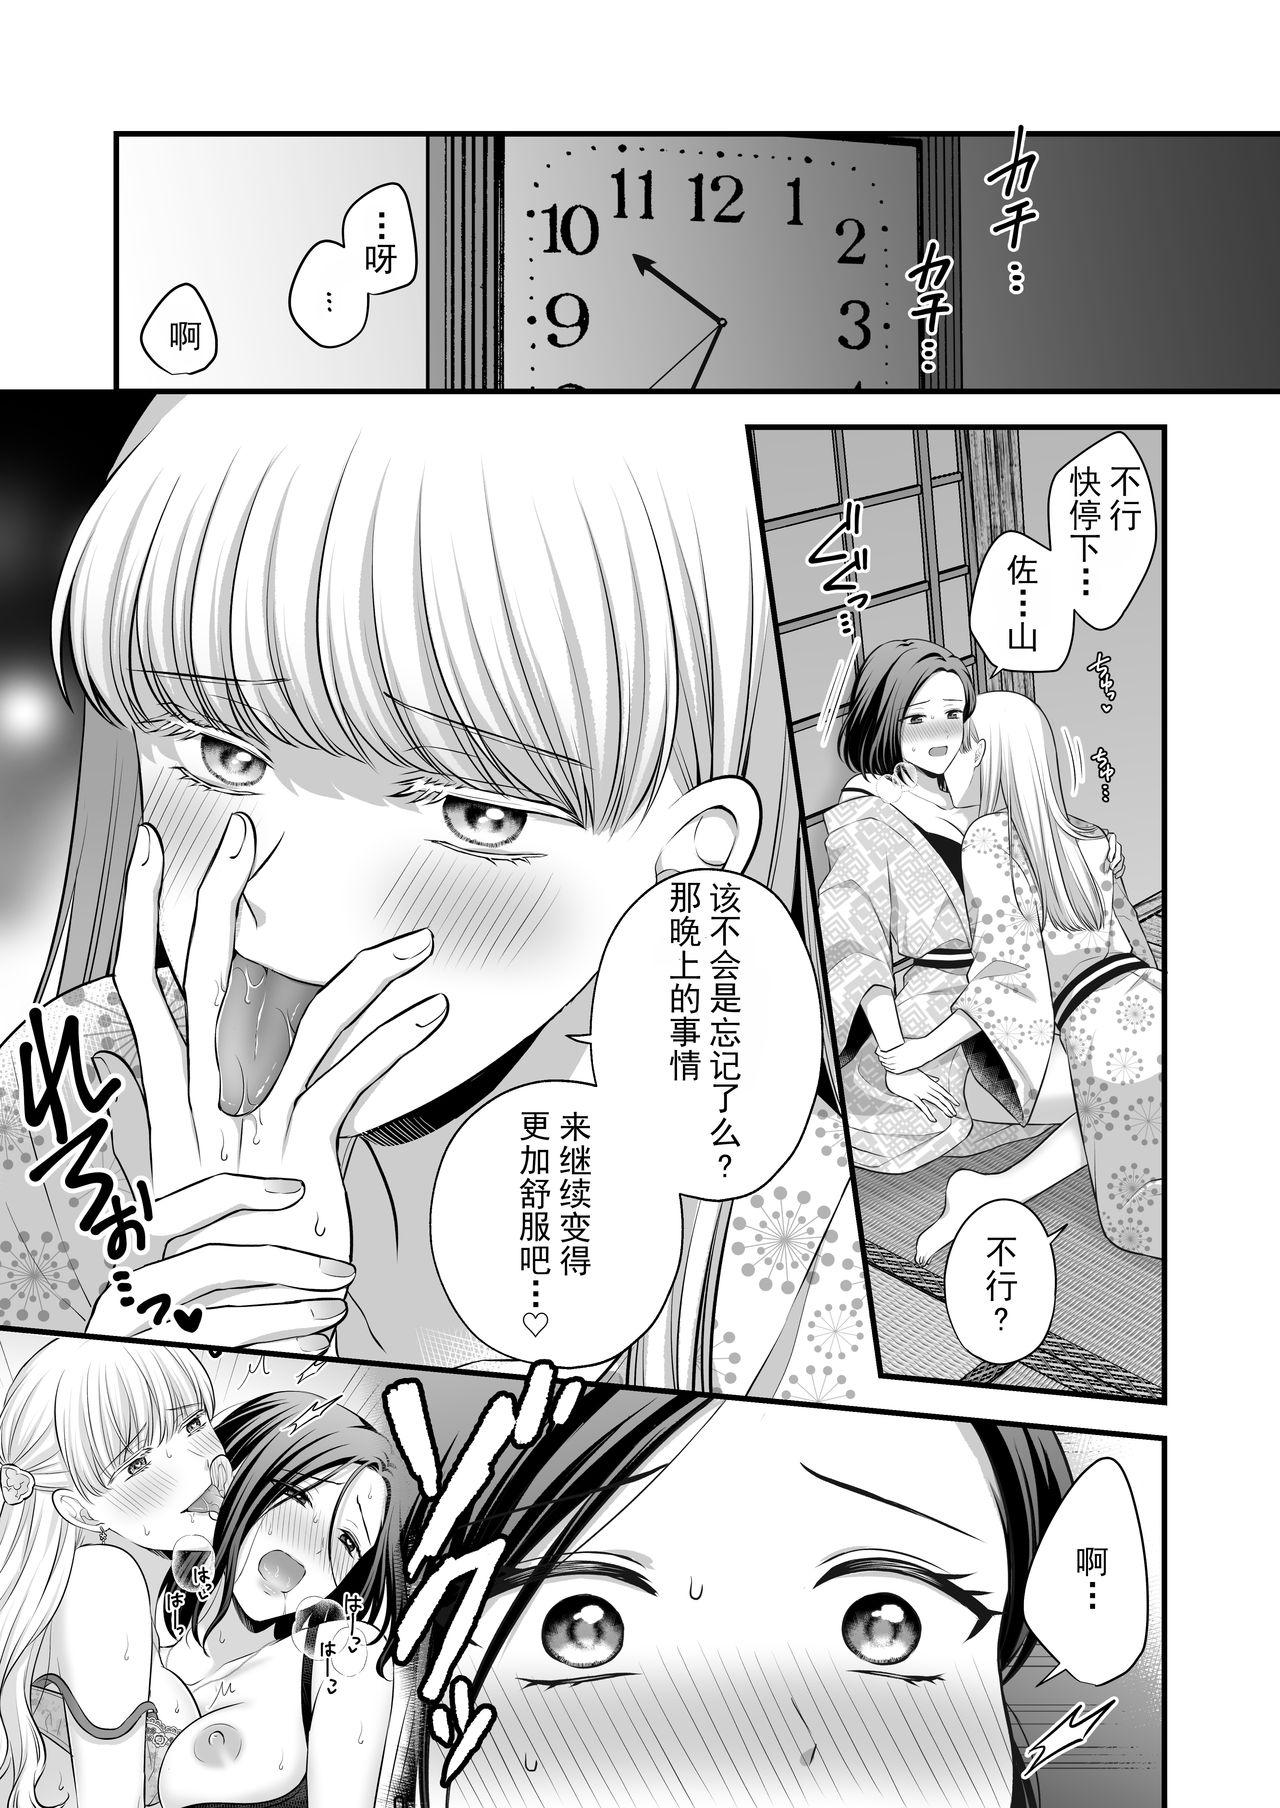 Hardcoresex Aishite Ii no wa, Karada dake 2- Onsen Ryokou no Yoru - Original Porra - Page 4